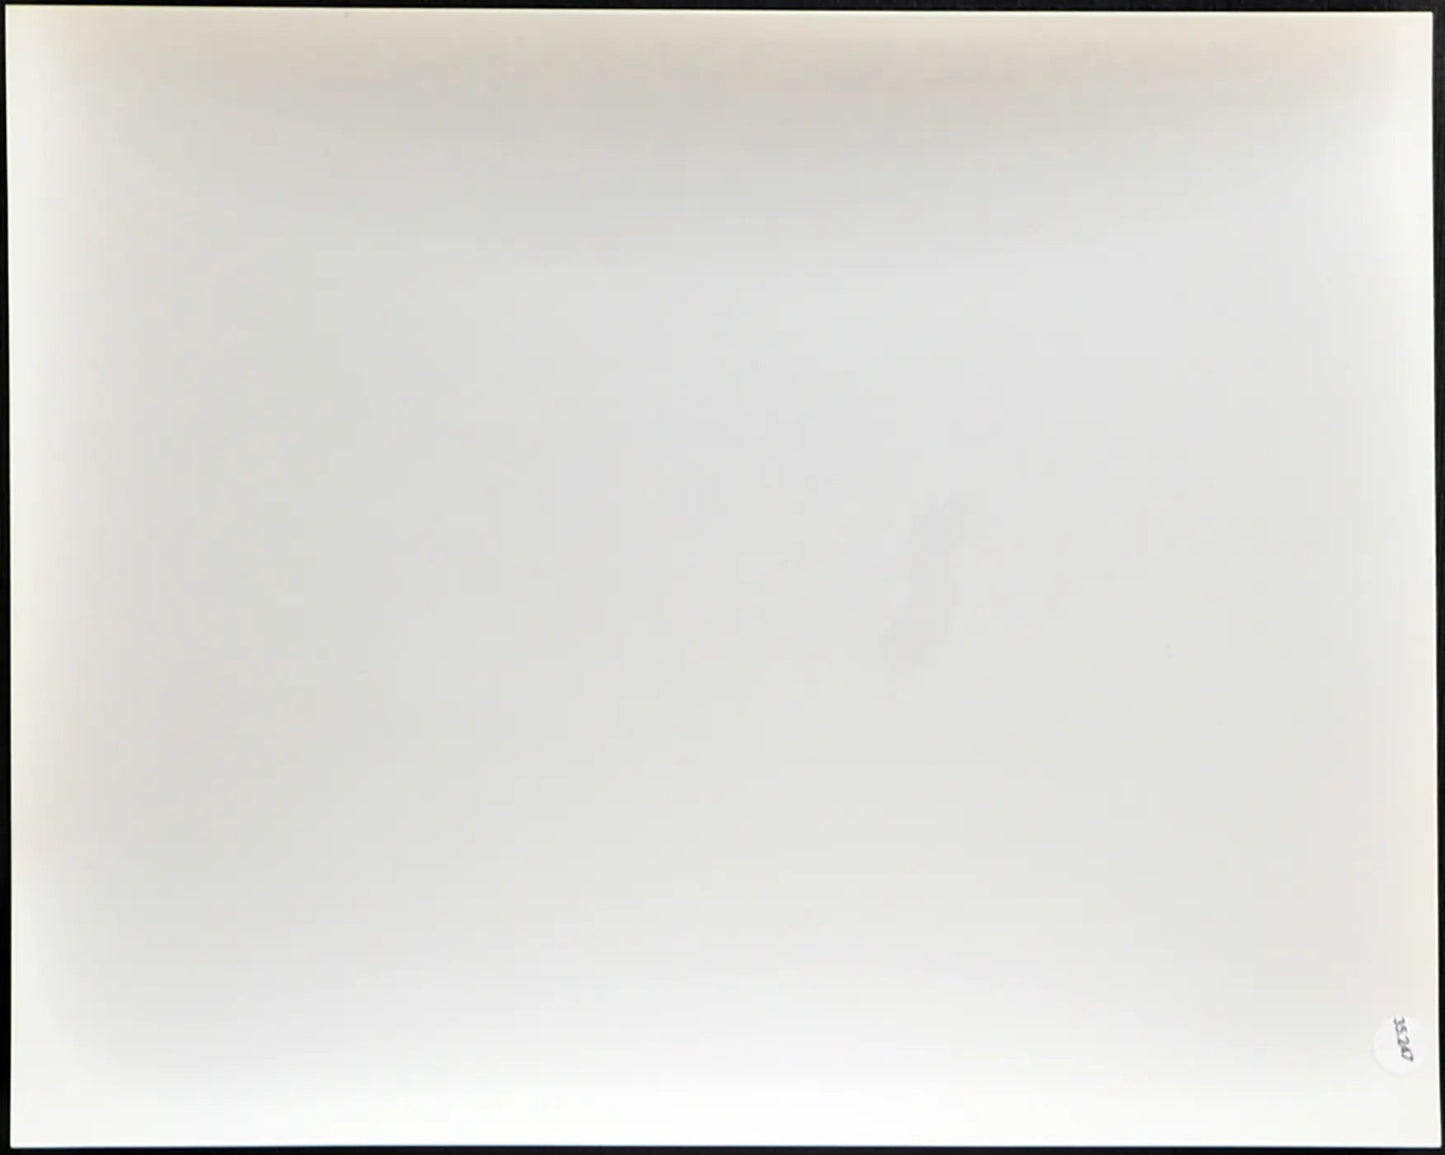 Pelè Film Fuga per la vittoria Ft 35247 - Stampa 20x25 cm - Farabola Stampa ai sali d'argento